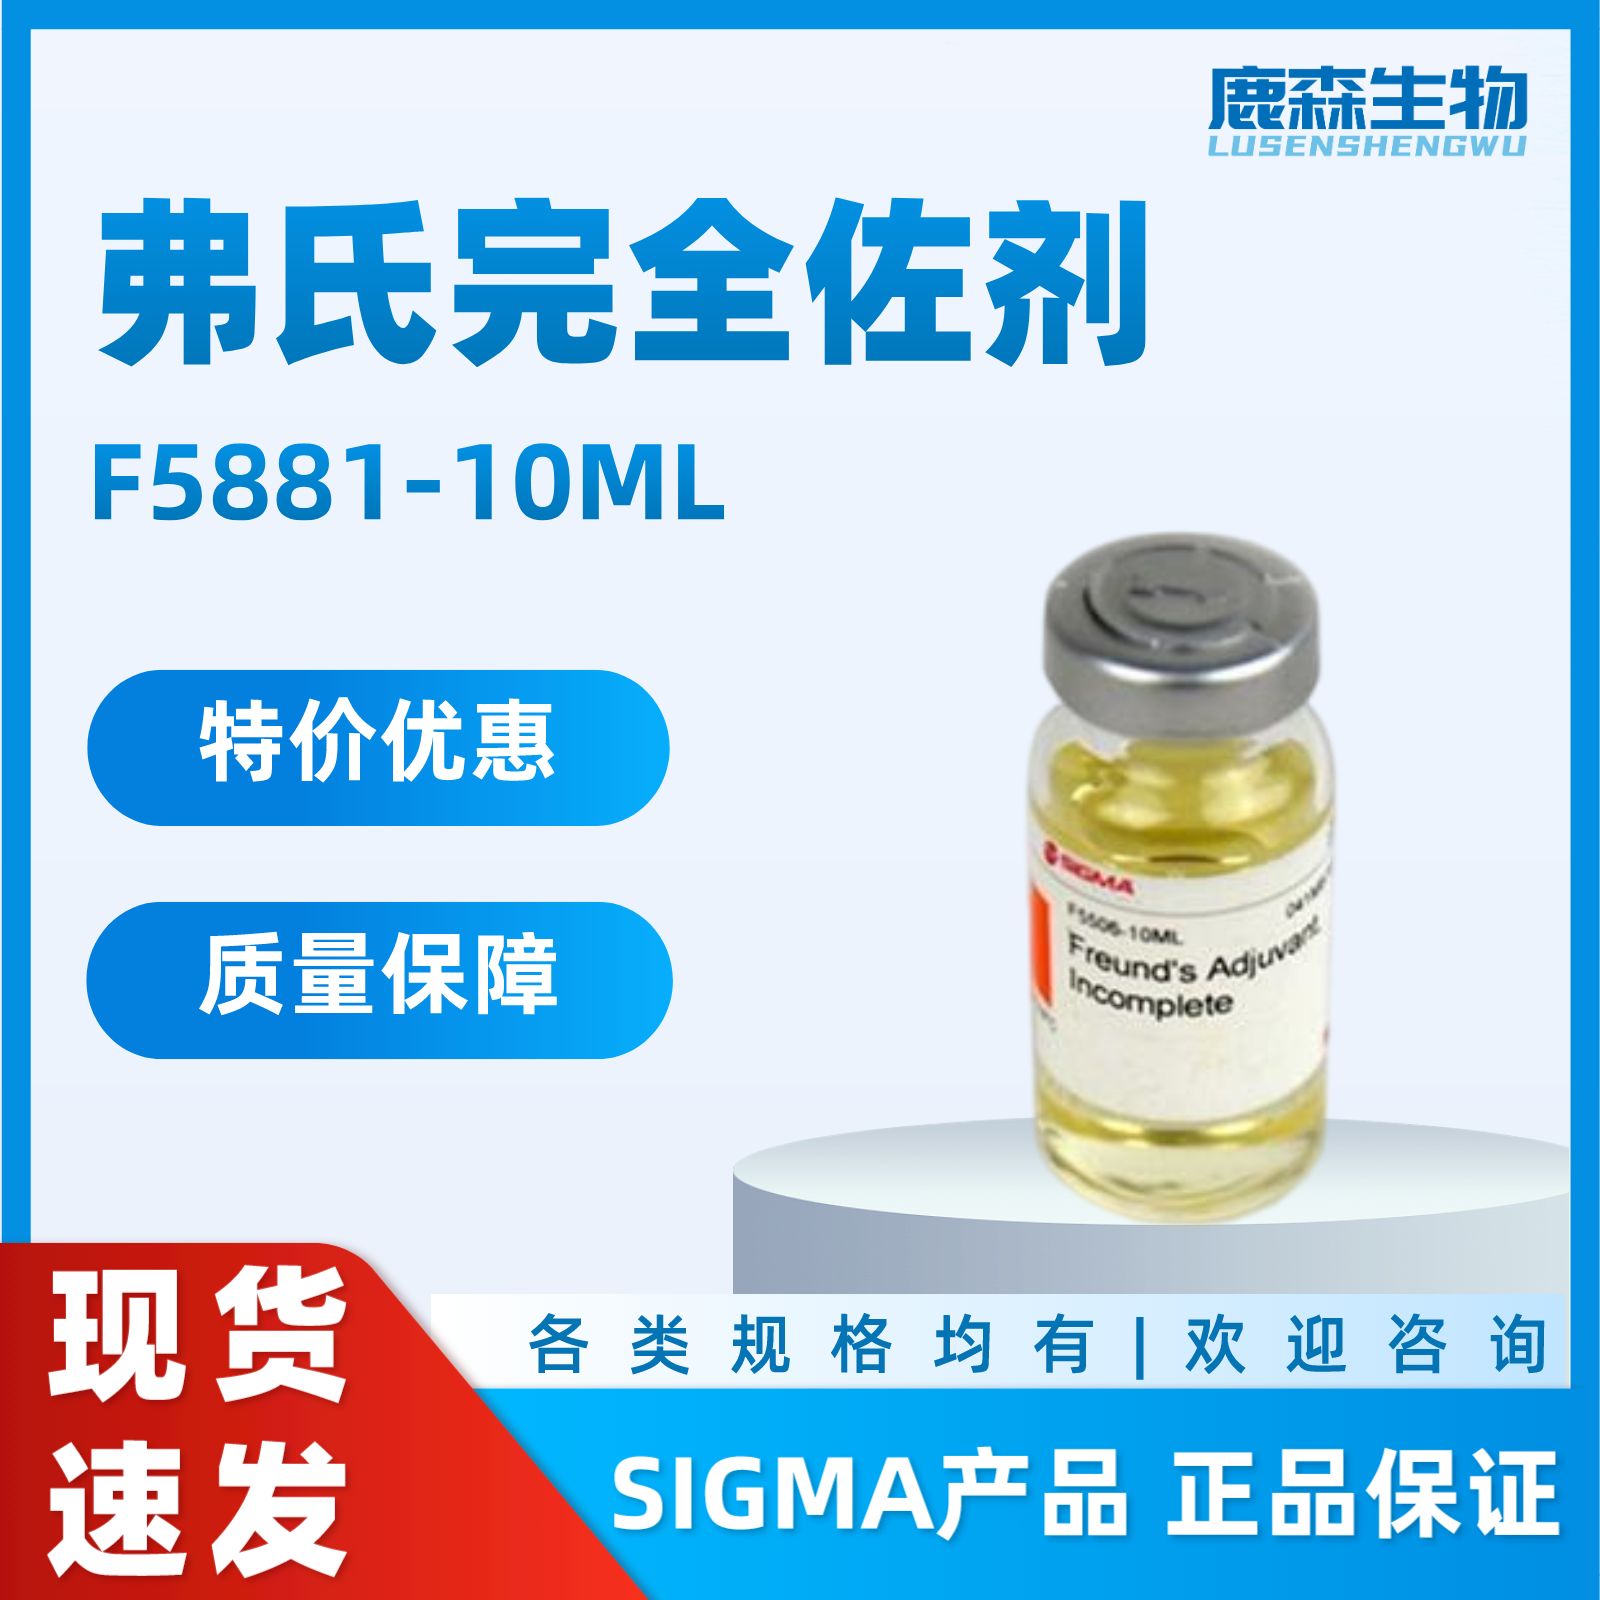 SIGMA代理货号F5881，弗氏完全佐剂